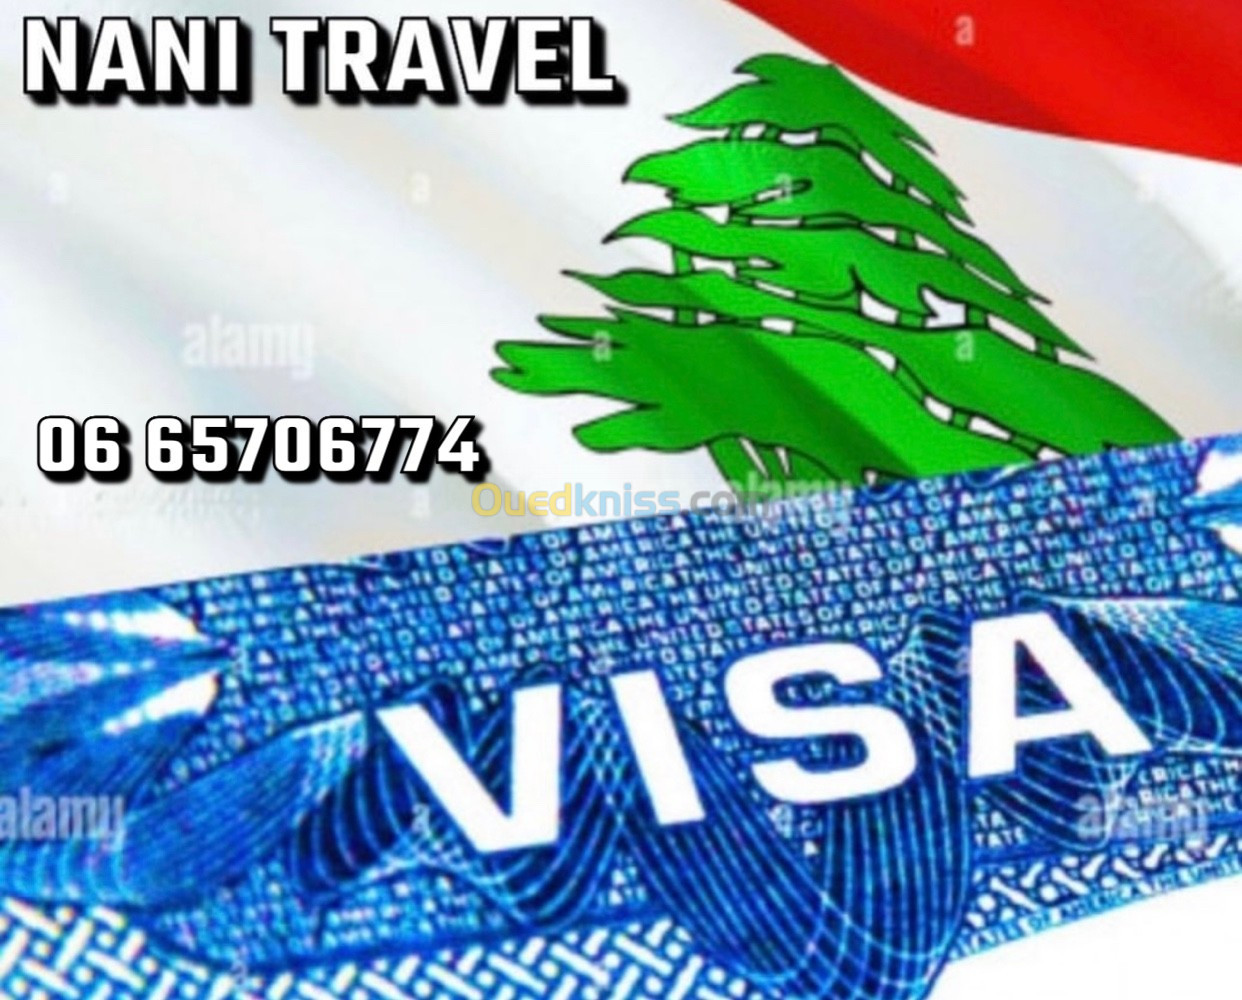 Visa Liban 